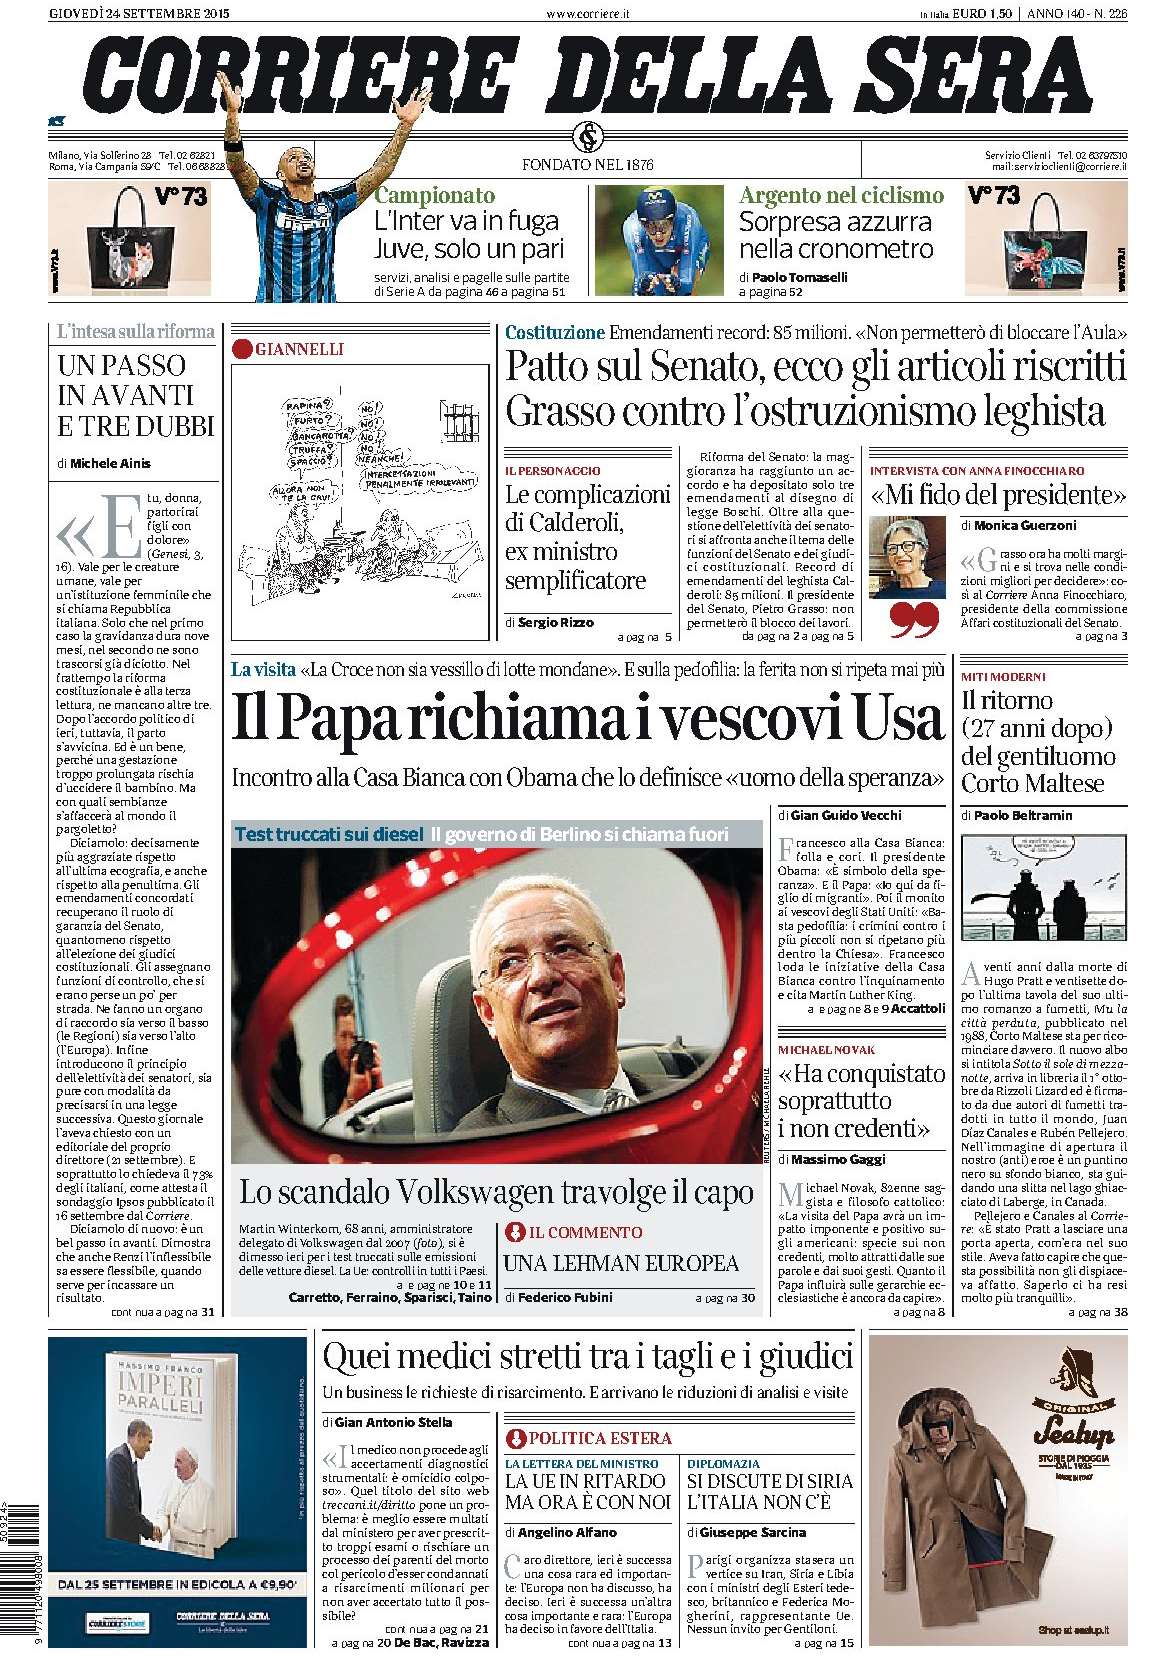 Corriere della Sera ITA 2015-9-24 Cover